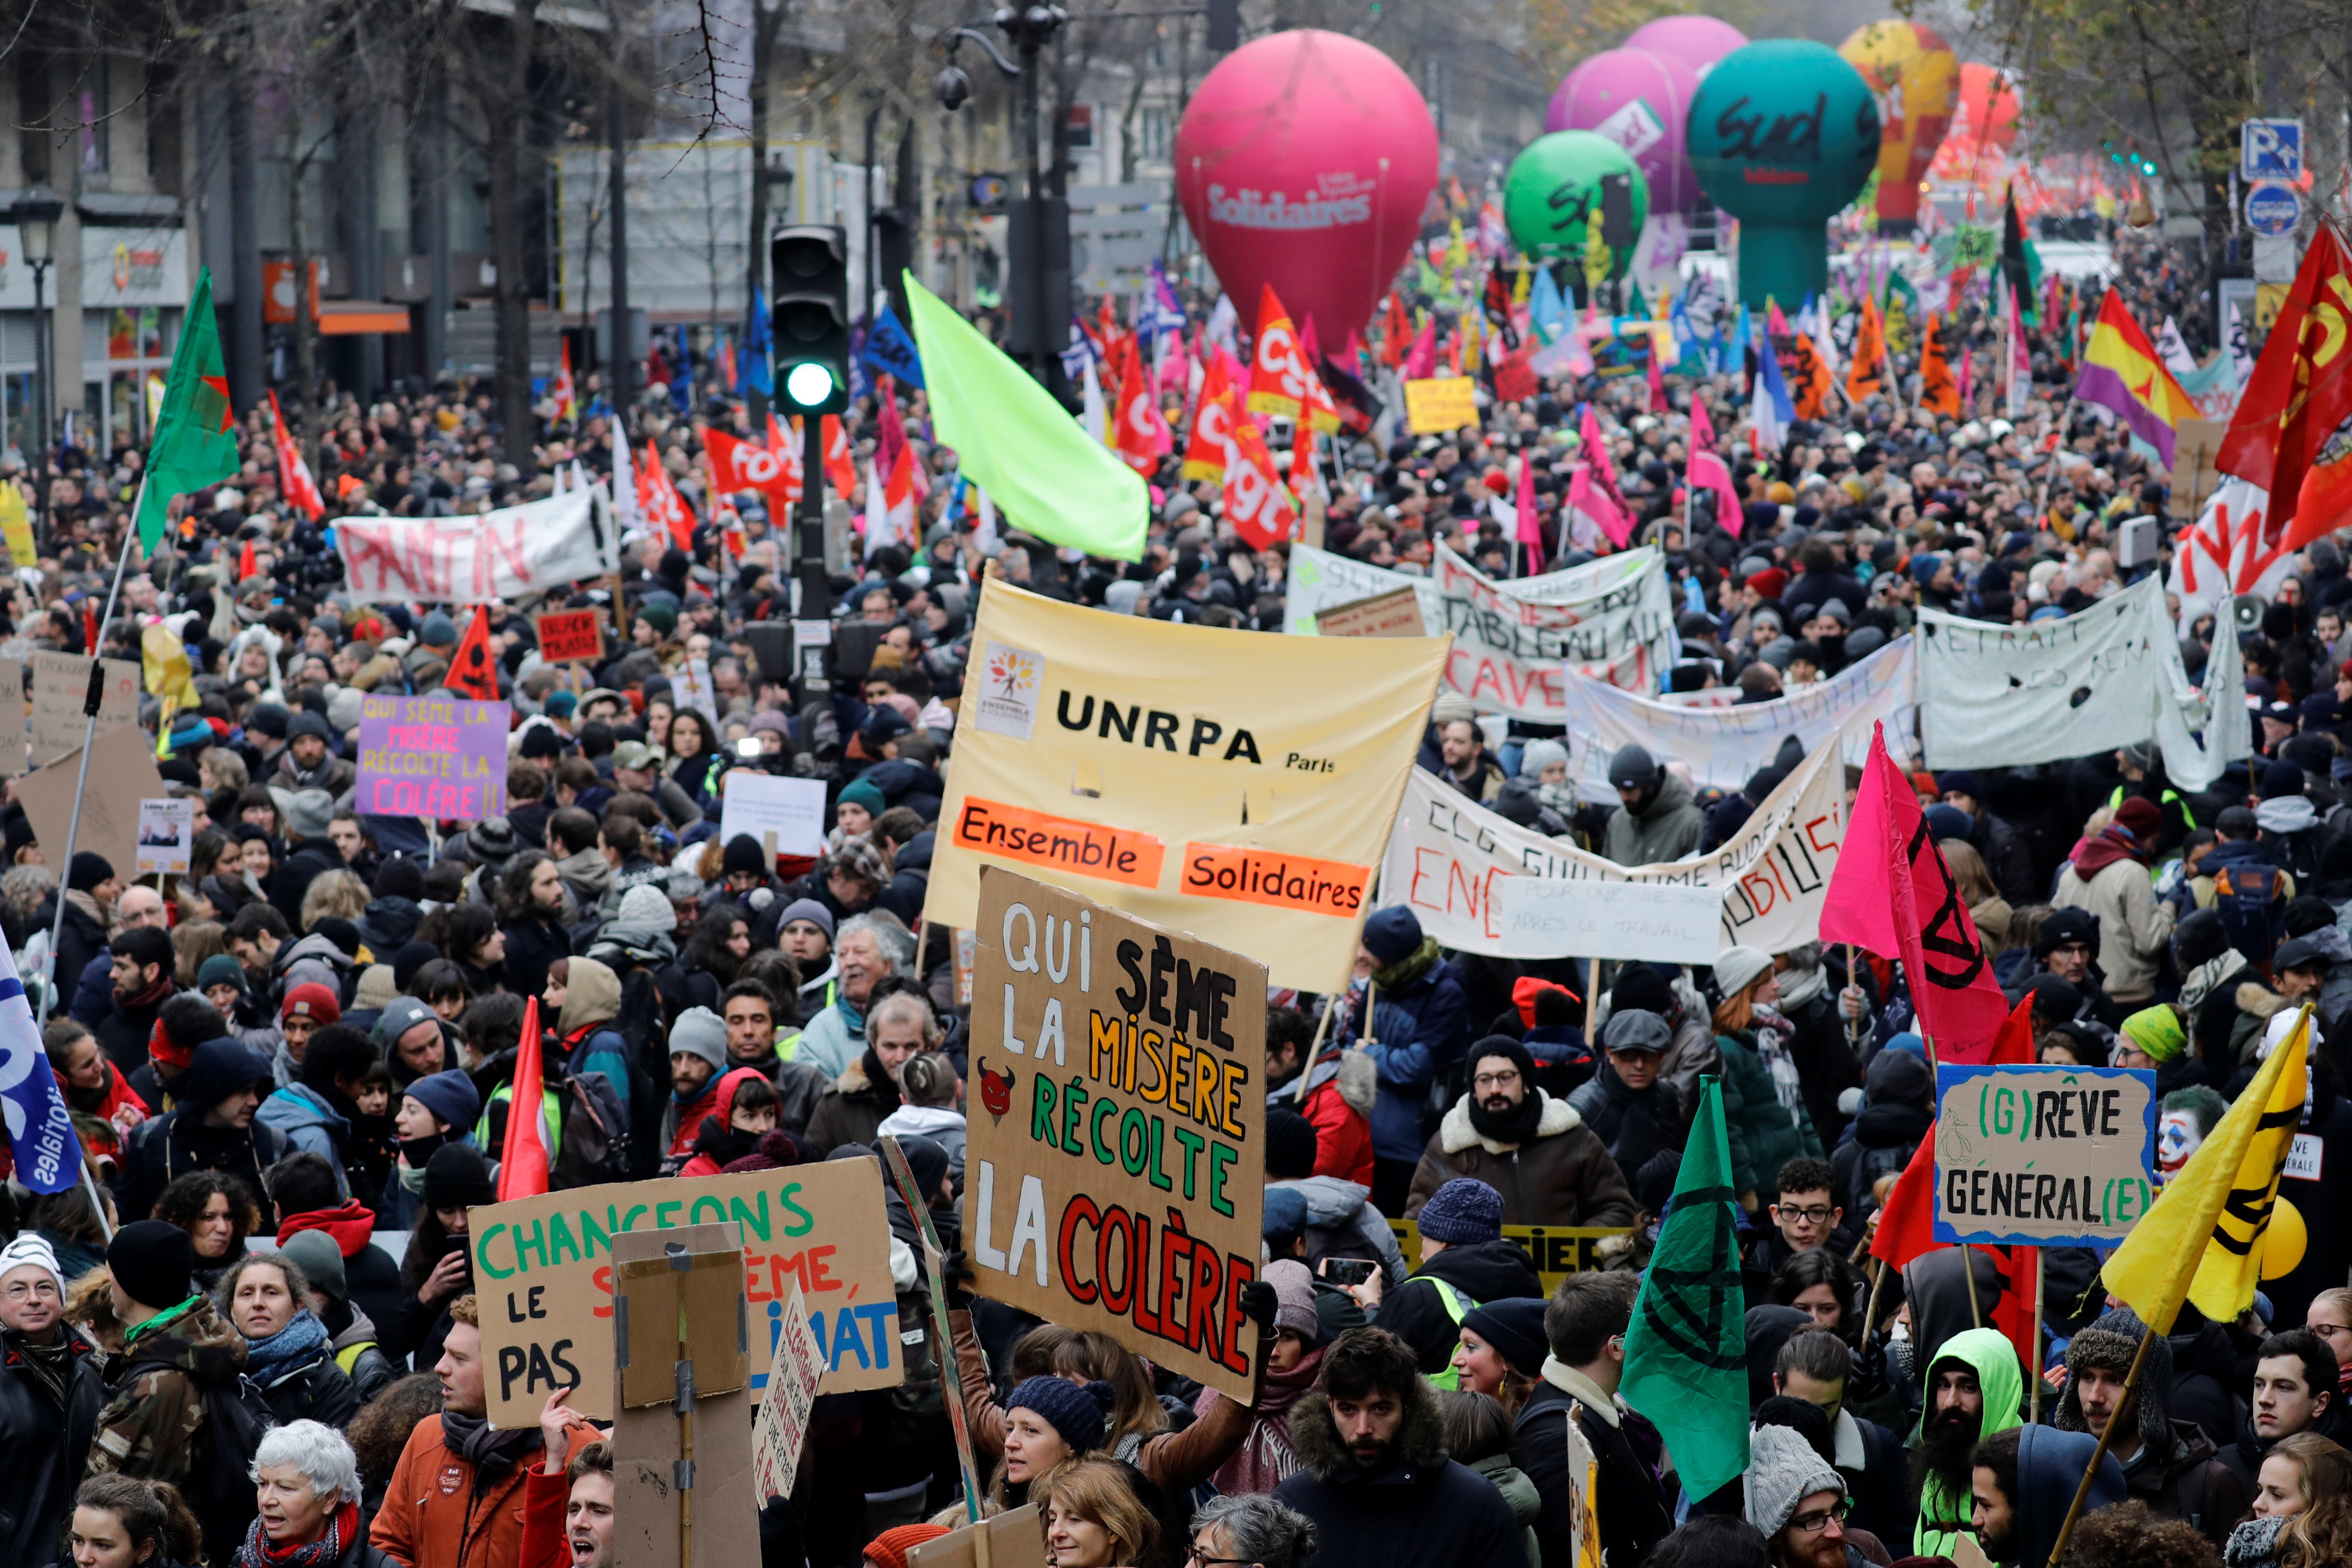 Retraites : entre 800 000 et 1,5 million de manifestants en France